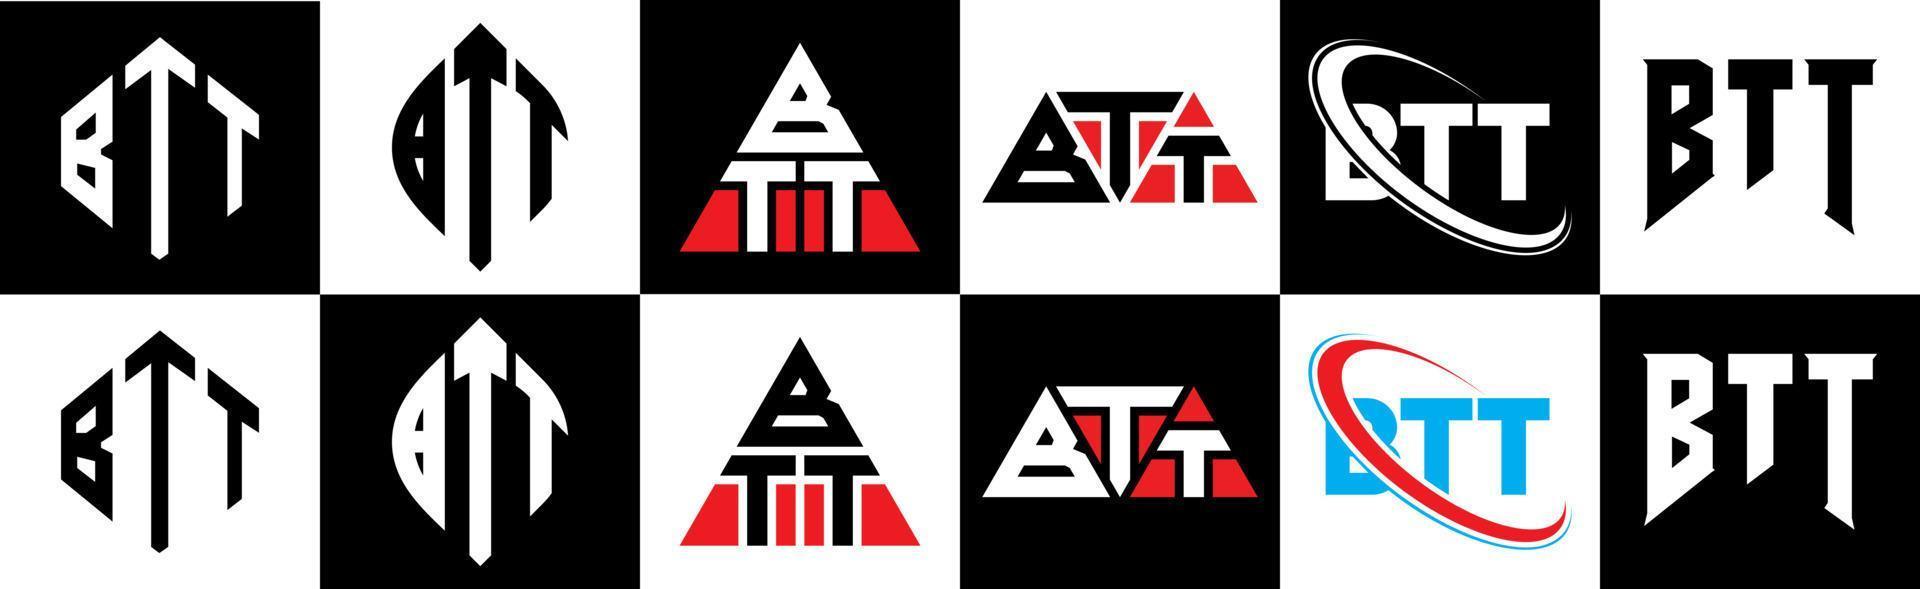 design de logotipo de letra btt em estilo seis. btt polígono, círculo, triângulo, hexágono, estilo plano e simples com logotipo de letra de variação de cor preto e branco definido em uma prancheta. btt logotipo minimalista e clássico vetor